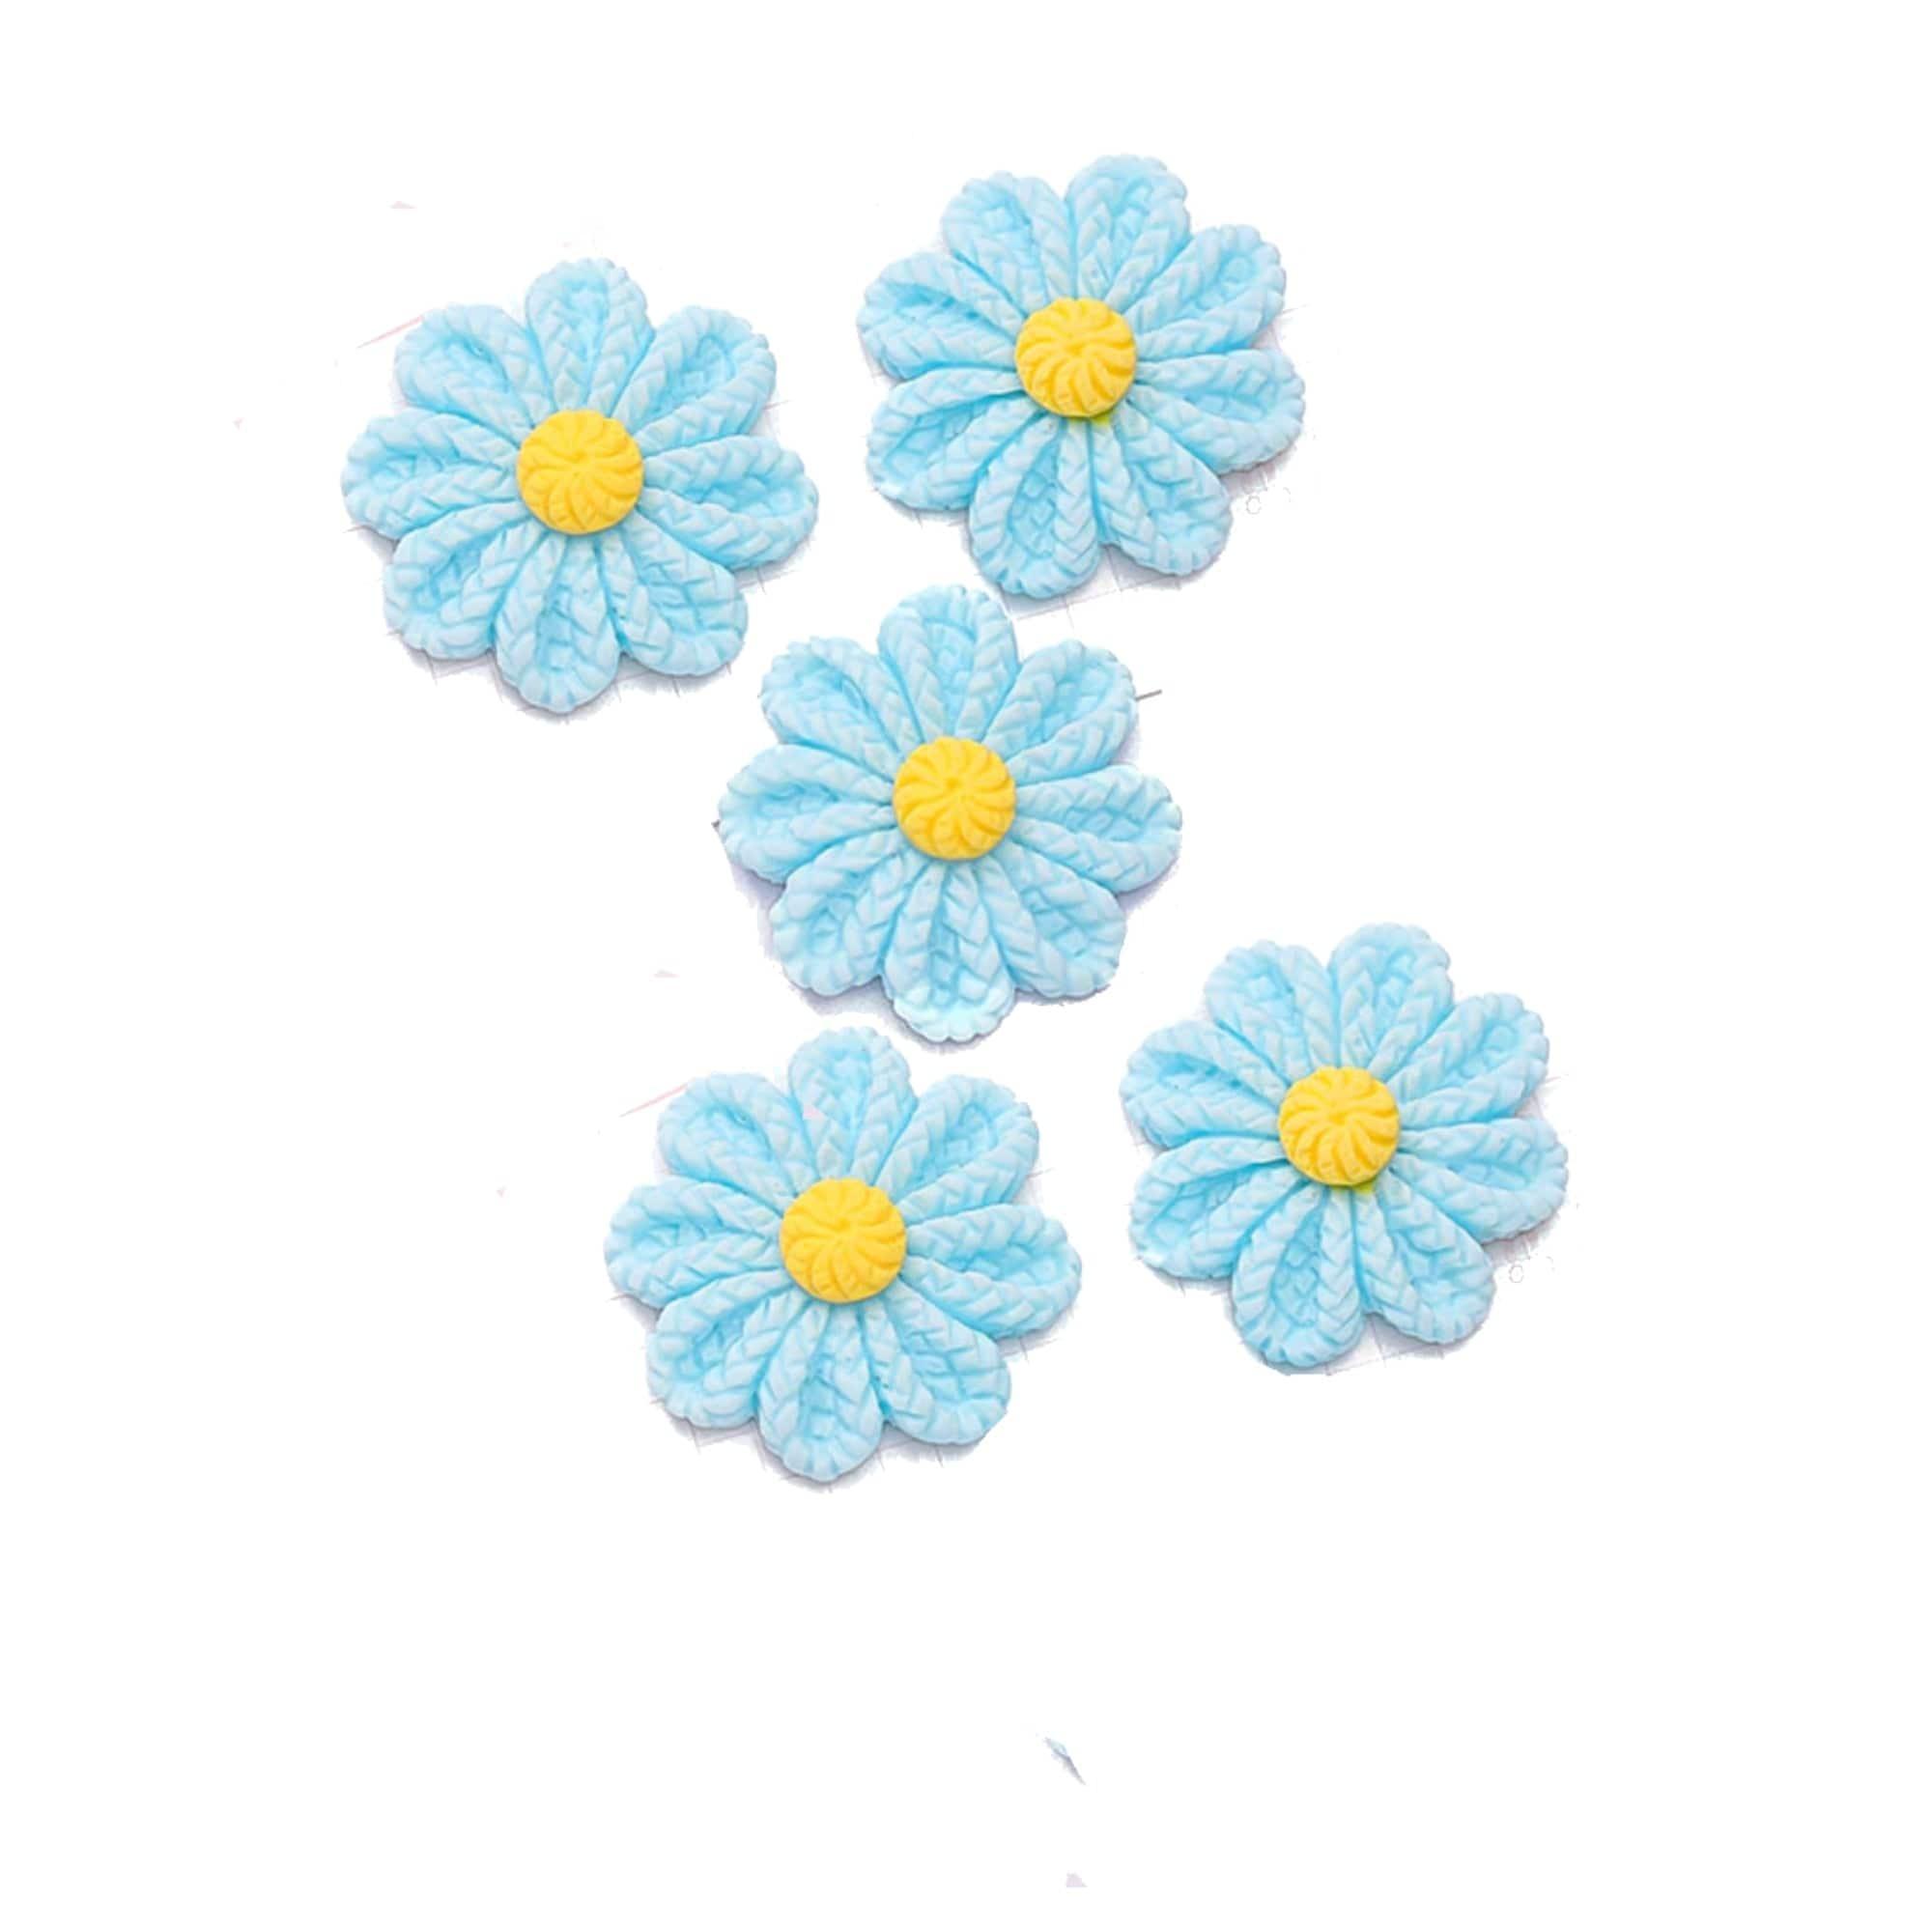 Flower Fun Collection Blue Flower Flatback Scrapbook Buttons by SSC Designs - Pkg. of 5 - Scrapbook Supply Companies